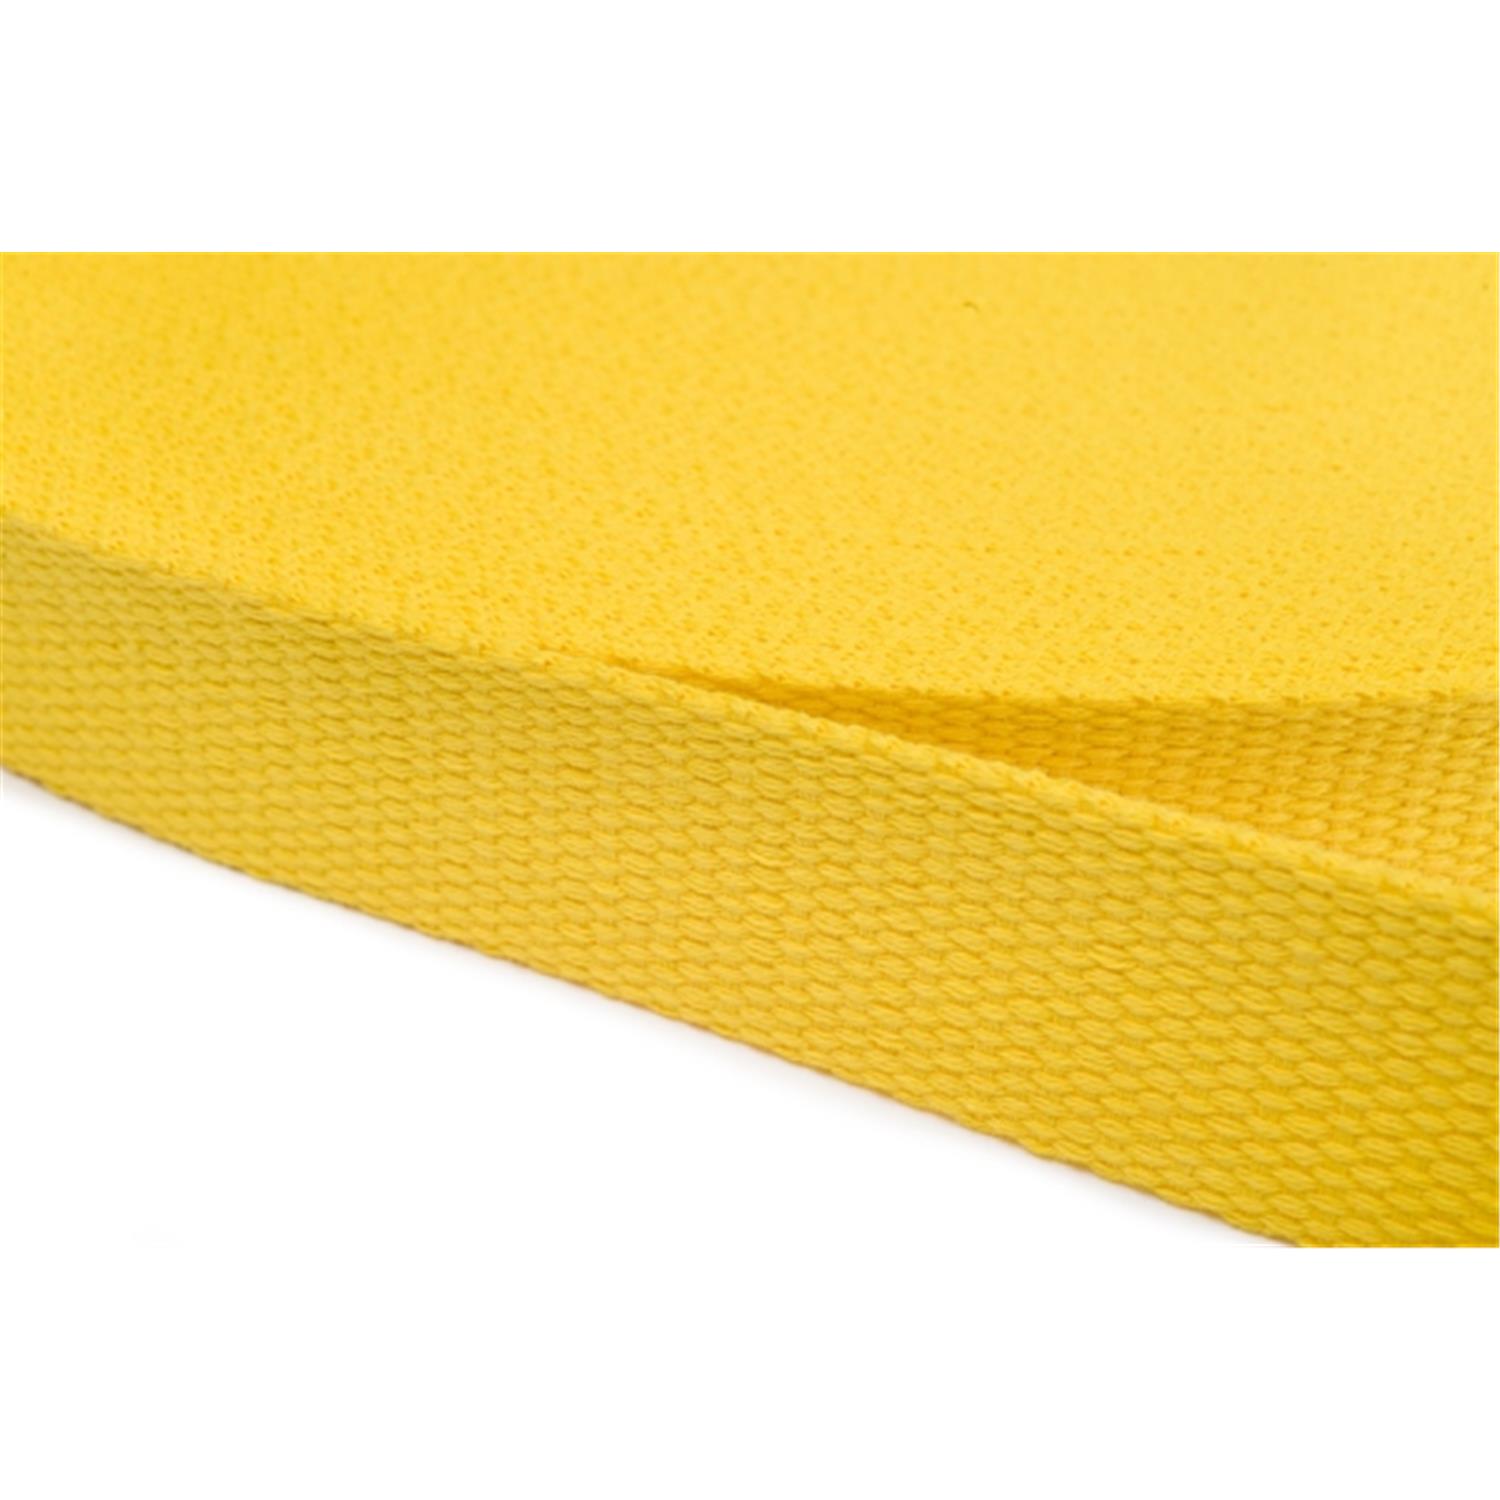 Gurtband aus Baumwolle 50mm in 20 Farben 05 - gelb 6 Meter